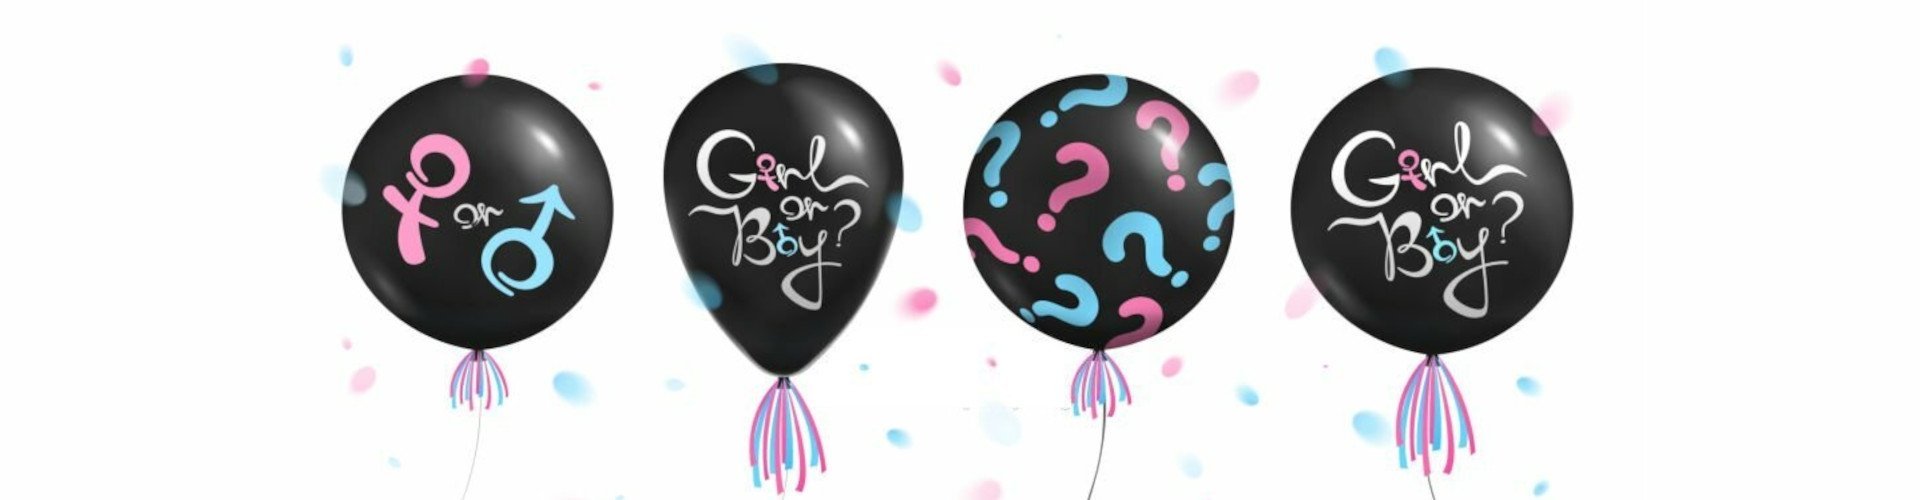 повітряні кульки для гендер-паті